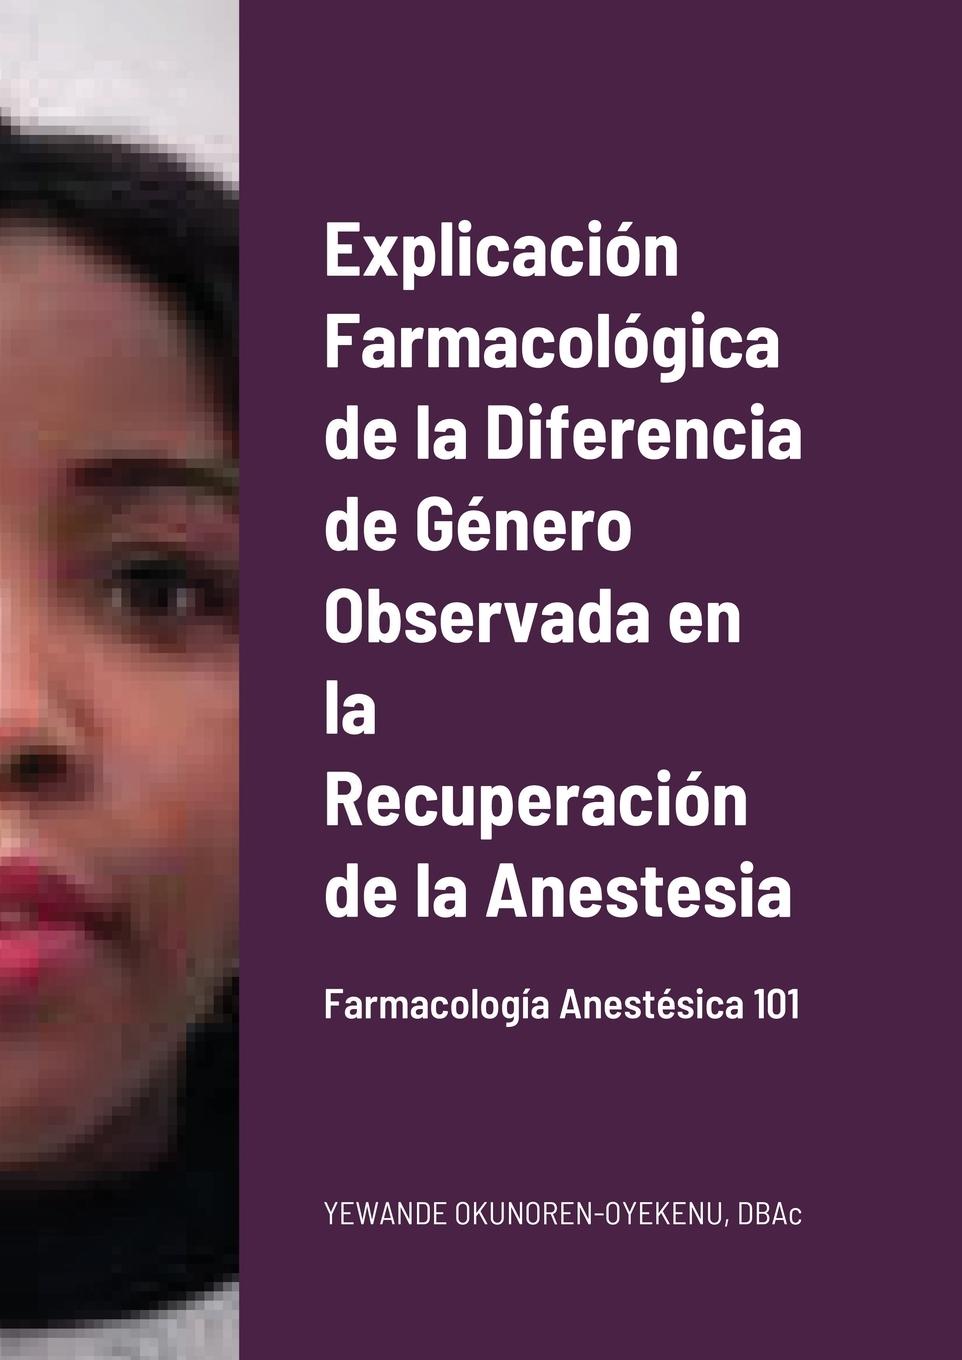 Knjiga Explicacion Farmacologica de la Diferencia de Genero Observada en la Recuperacion de la Anestesia 